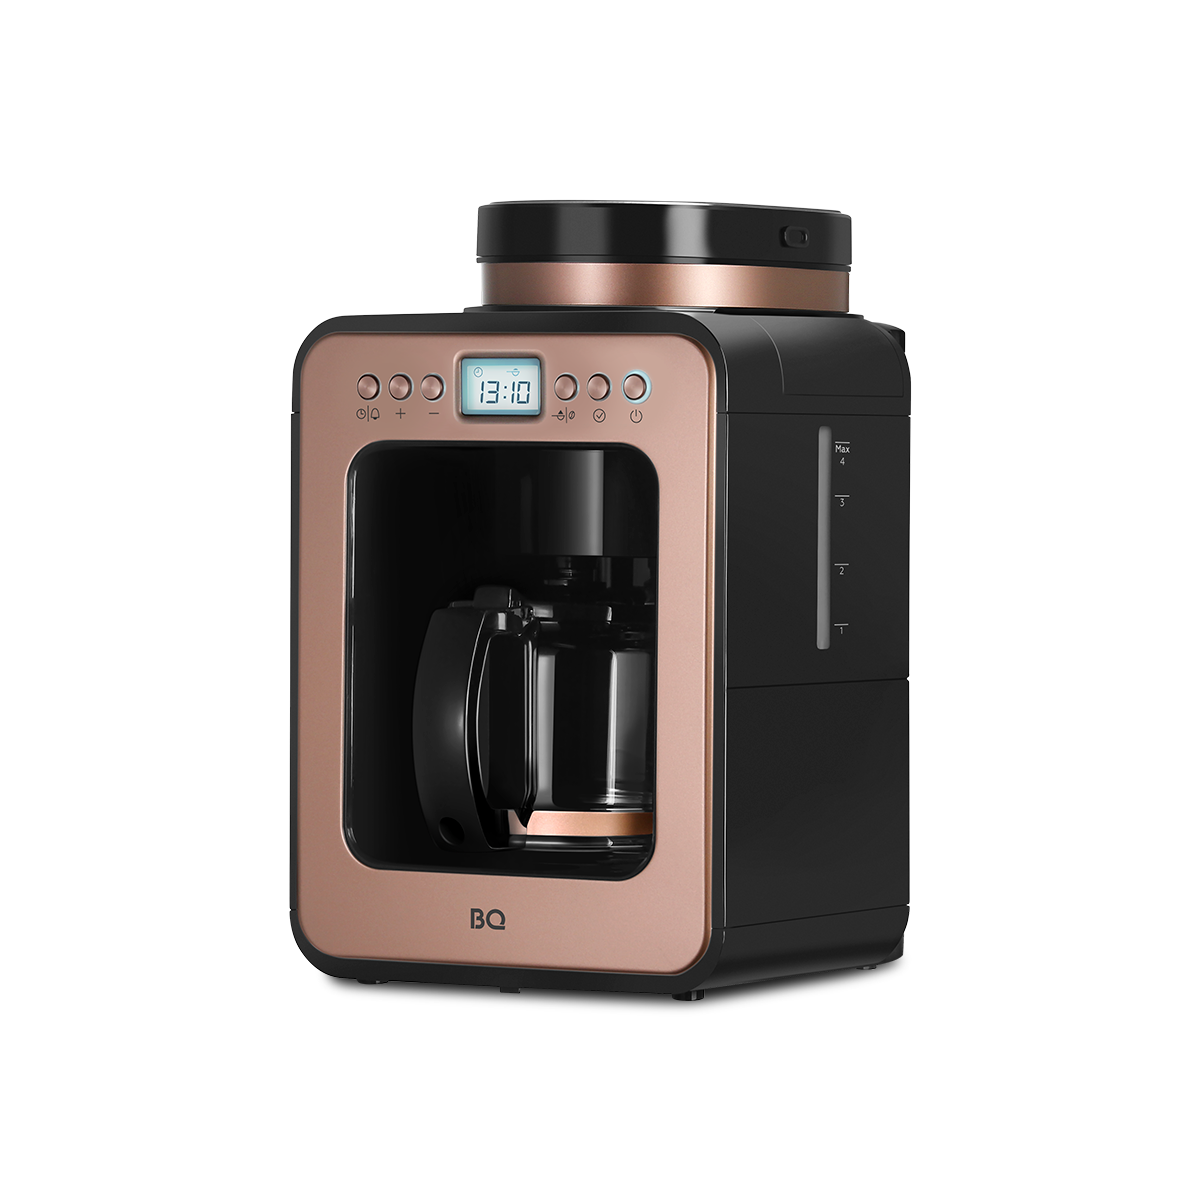 Кофеварка капельного типа BQ CM7001 золотистый, розовый, черный капельная кофеварка со встроенной кофемолкой bq cm7002 розовое золото